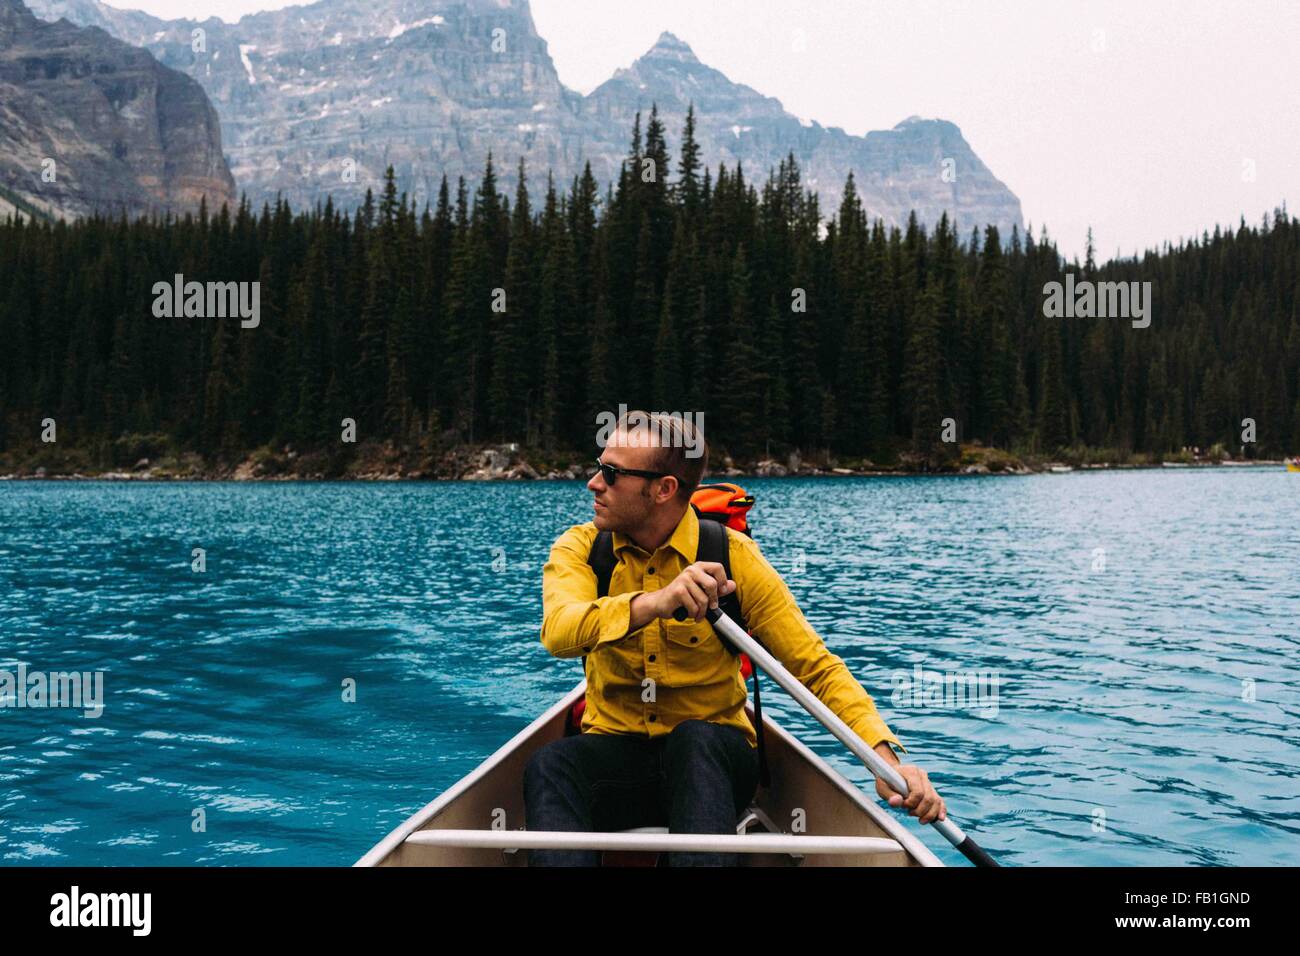 Vista frontal de mediados del hombre adulto, remar en canoa, apartar la mirada, el lago Moraine, el Parque Nacional de Banff, Alberta, Canadá Foto de stock